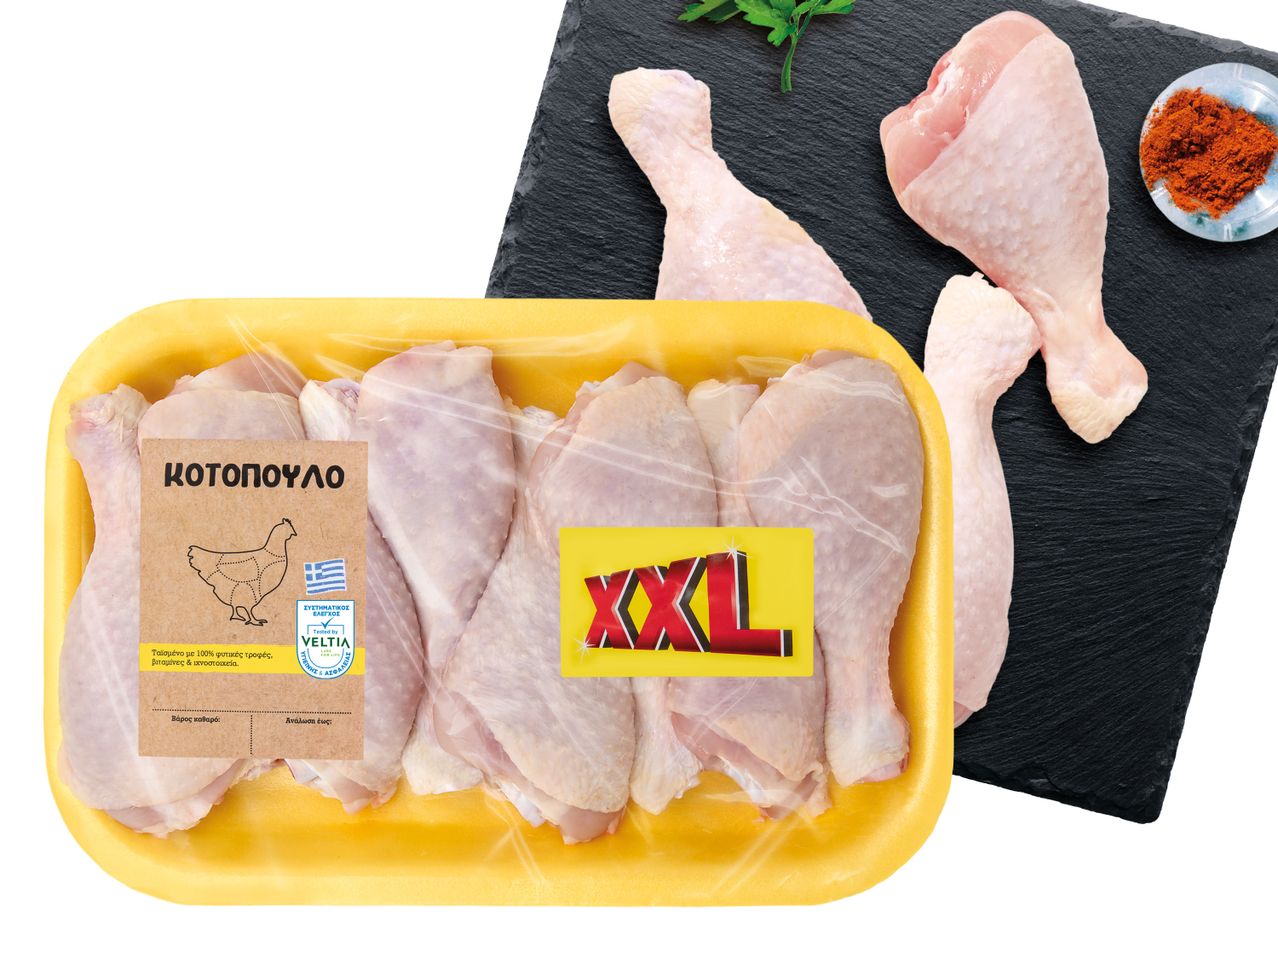 Άνοιγμα σε πλήρης οθόνη: Κοπανάκι κοτόπουλο Ελλάδας XXL - Εικόνα 1